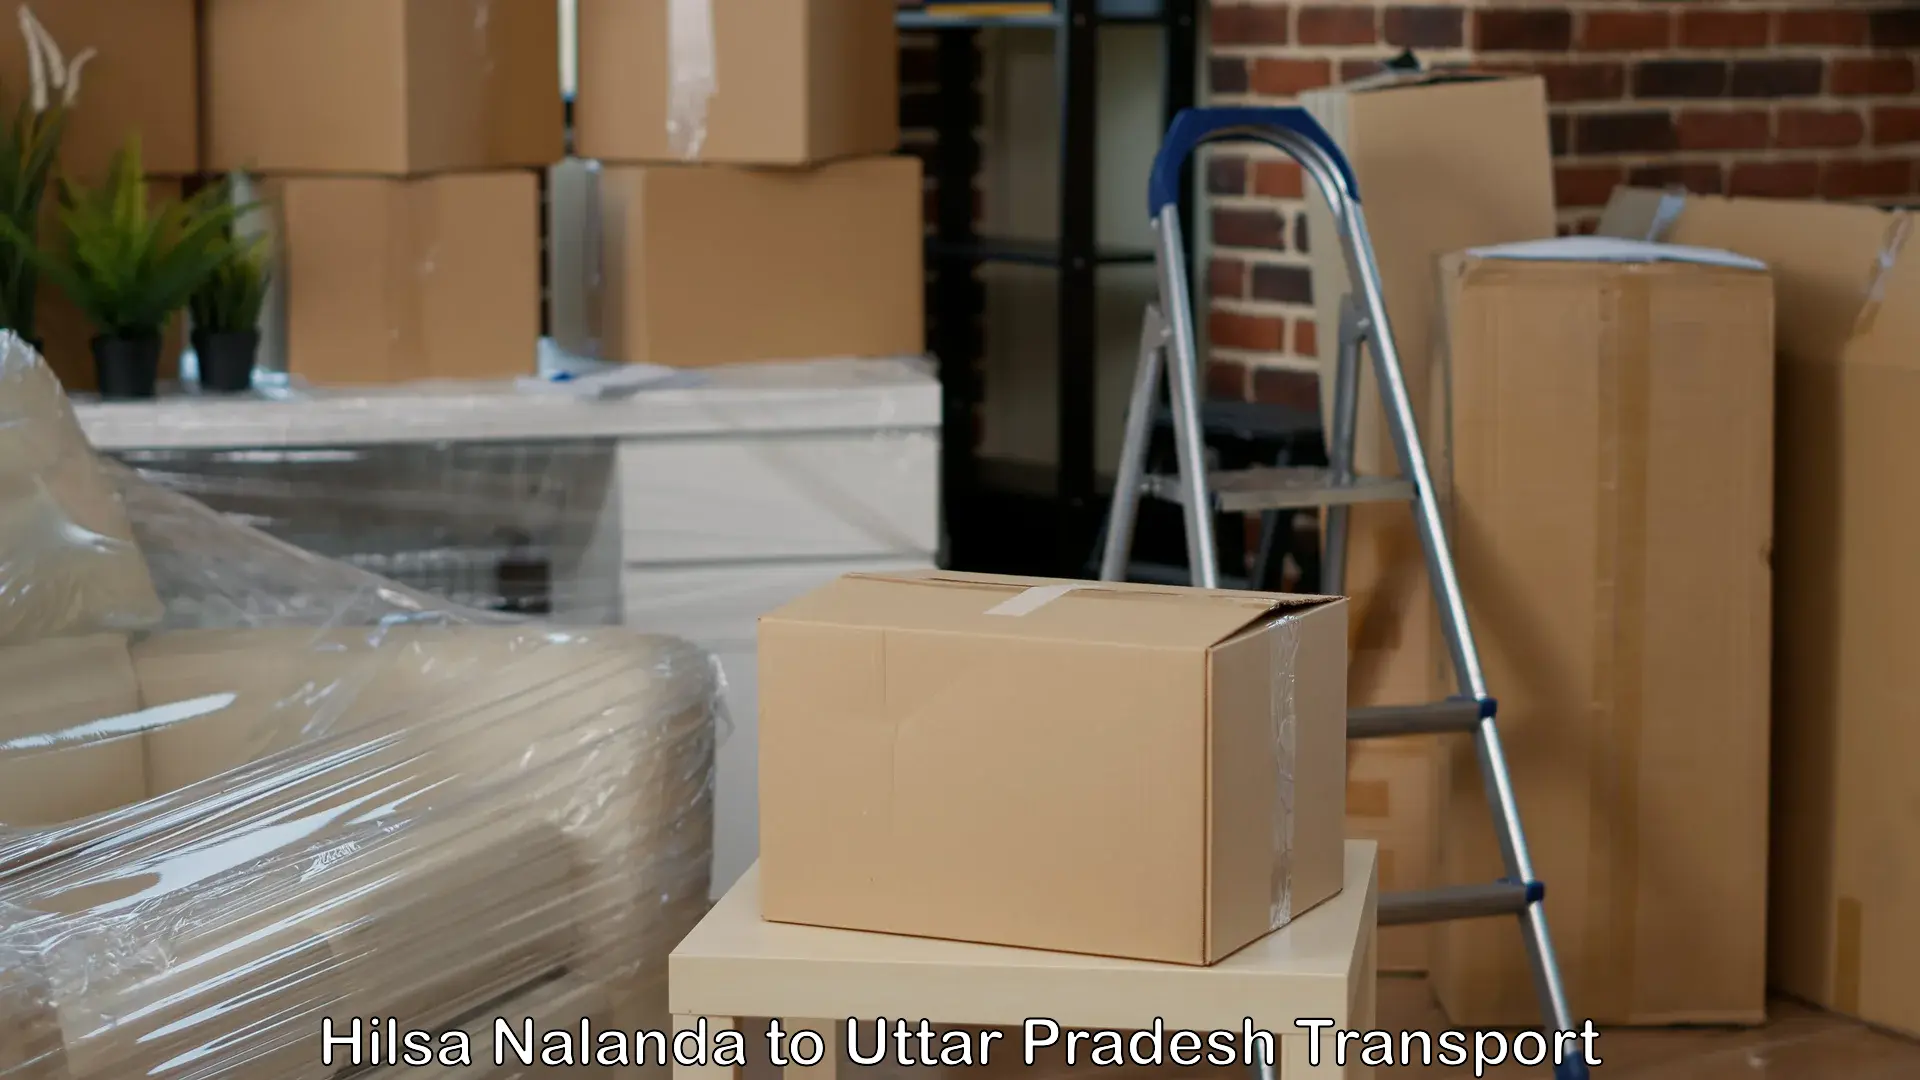 Air freight transport services Hilsa Nalanda to Sant Kabir Nagar